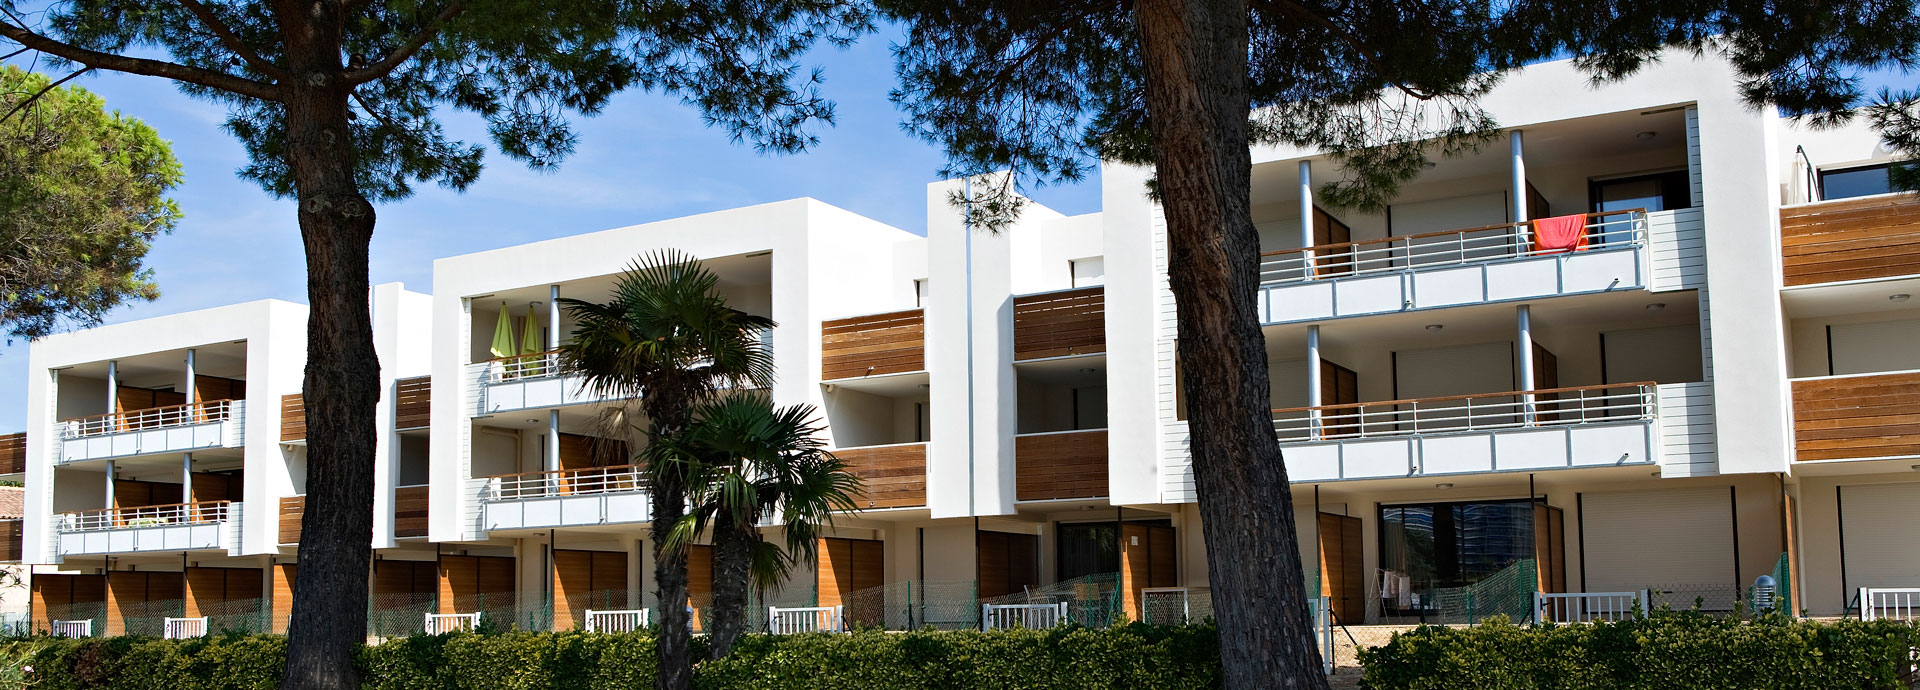 Coralia Vacances: affitto di residence per vacanze